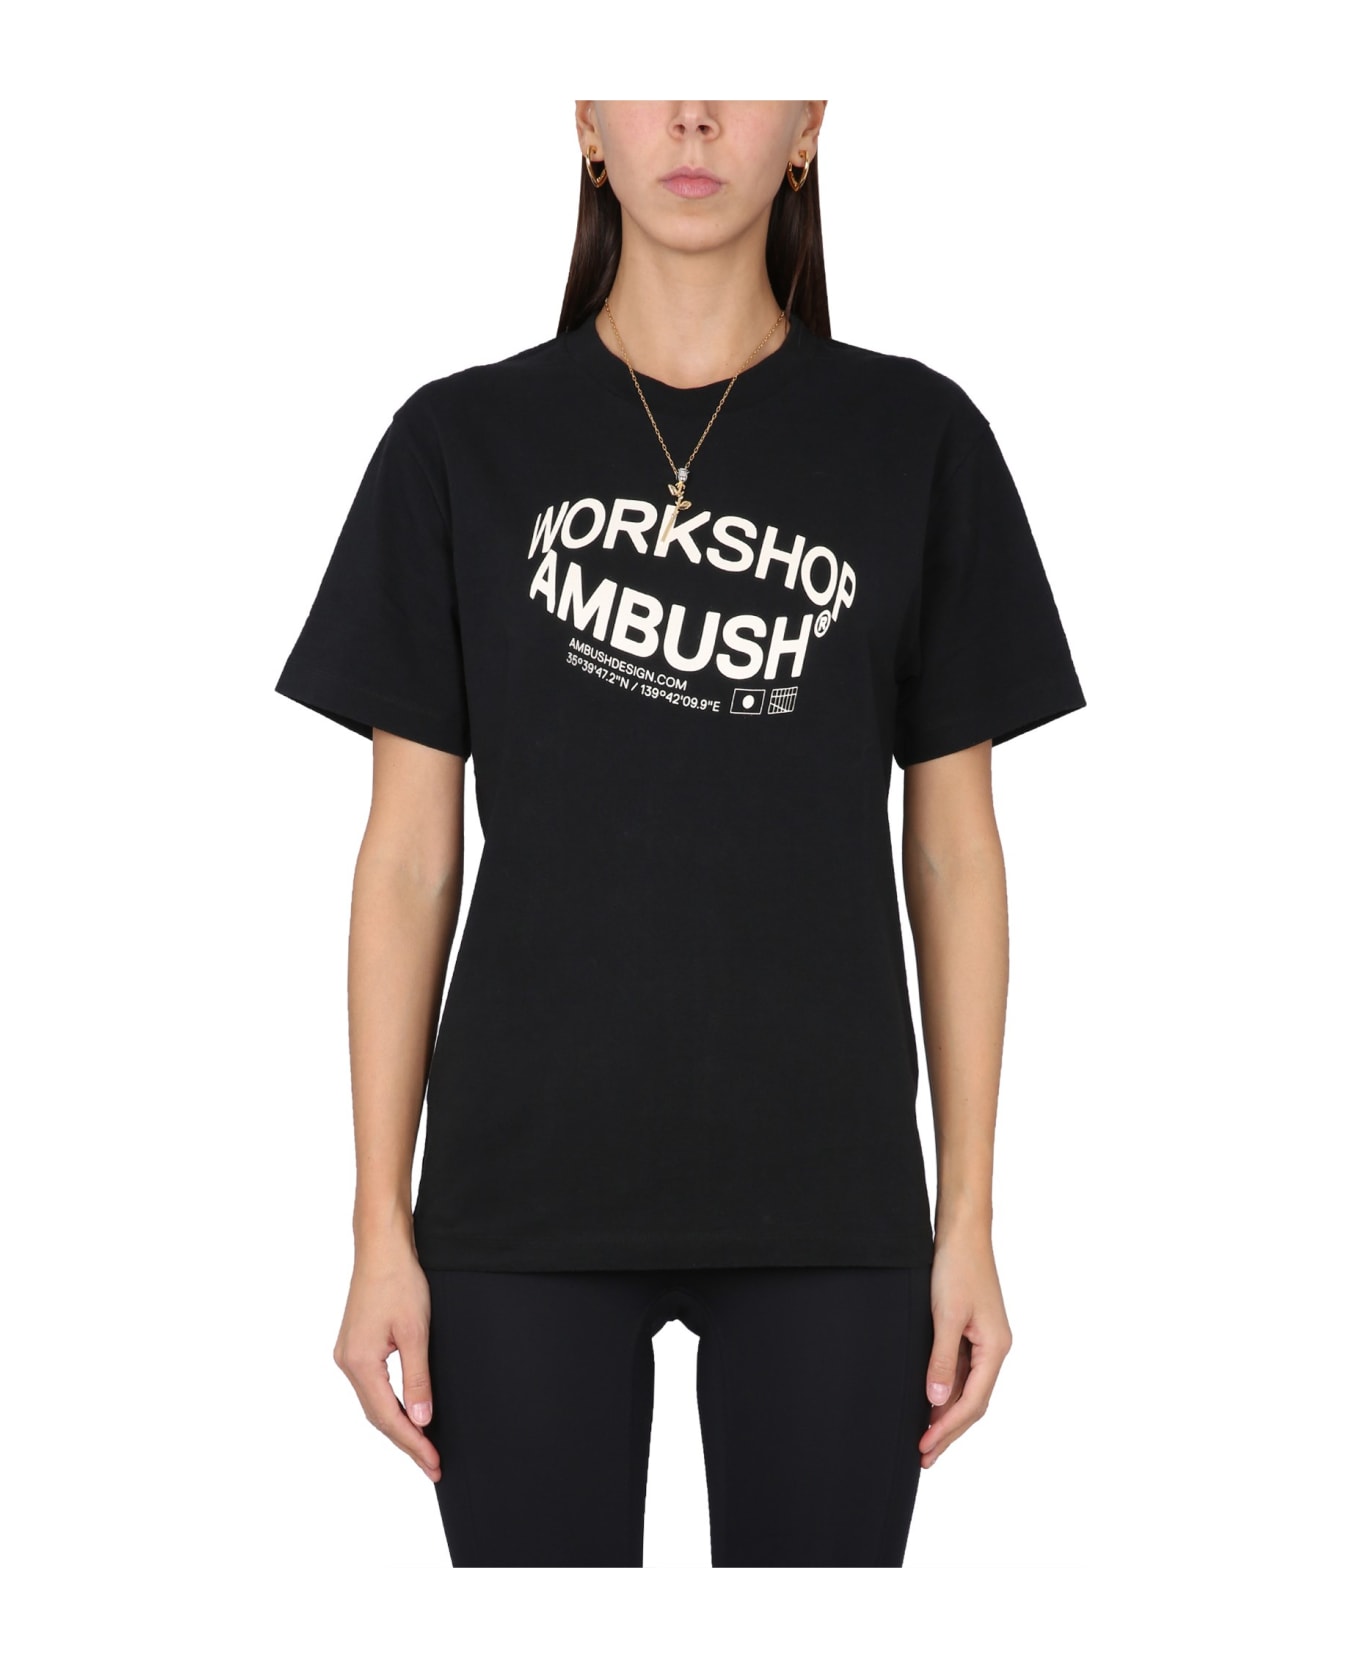 AMBUSH Revolve T-shirt - Black